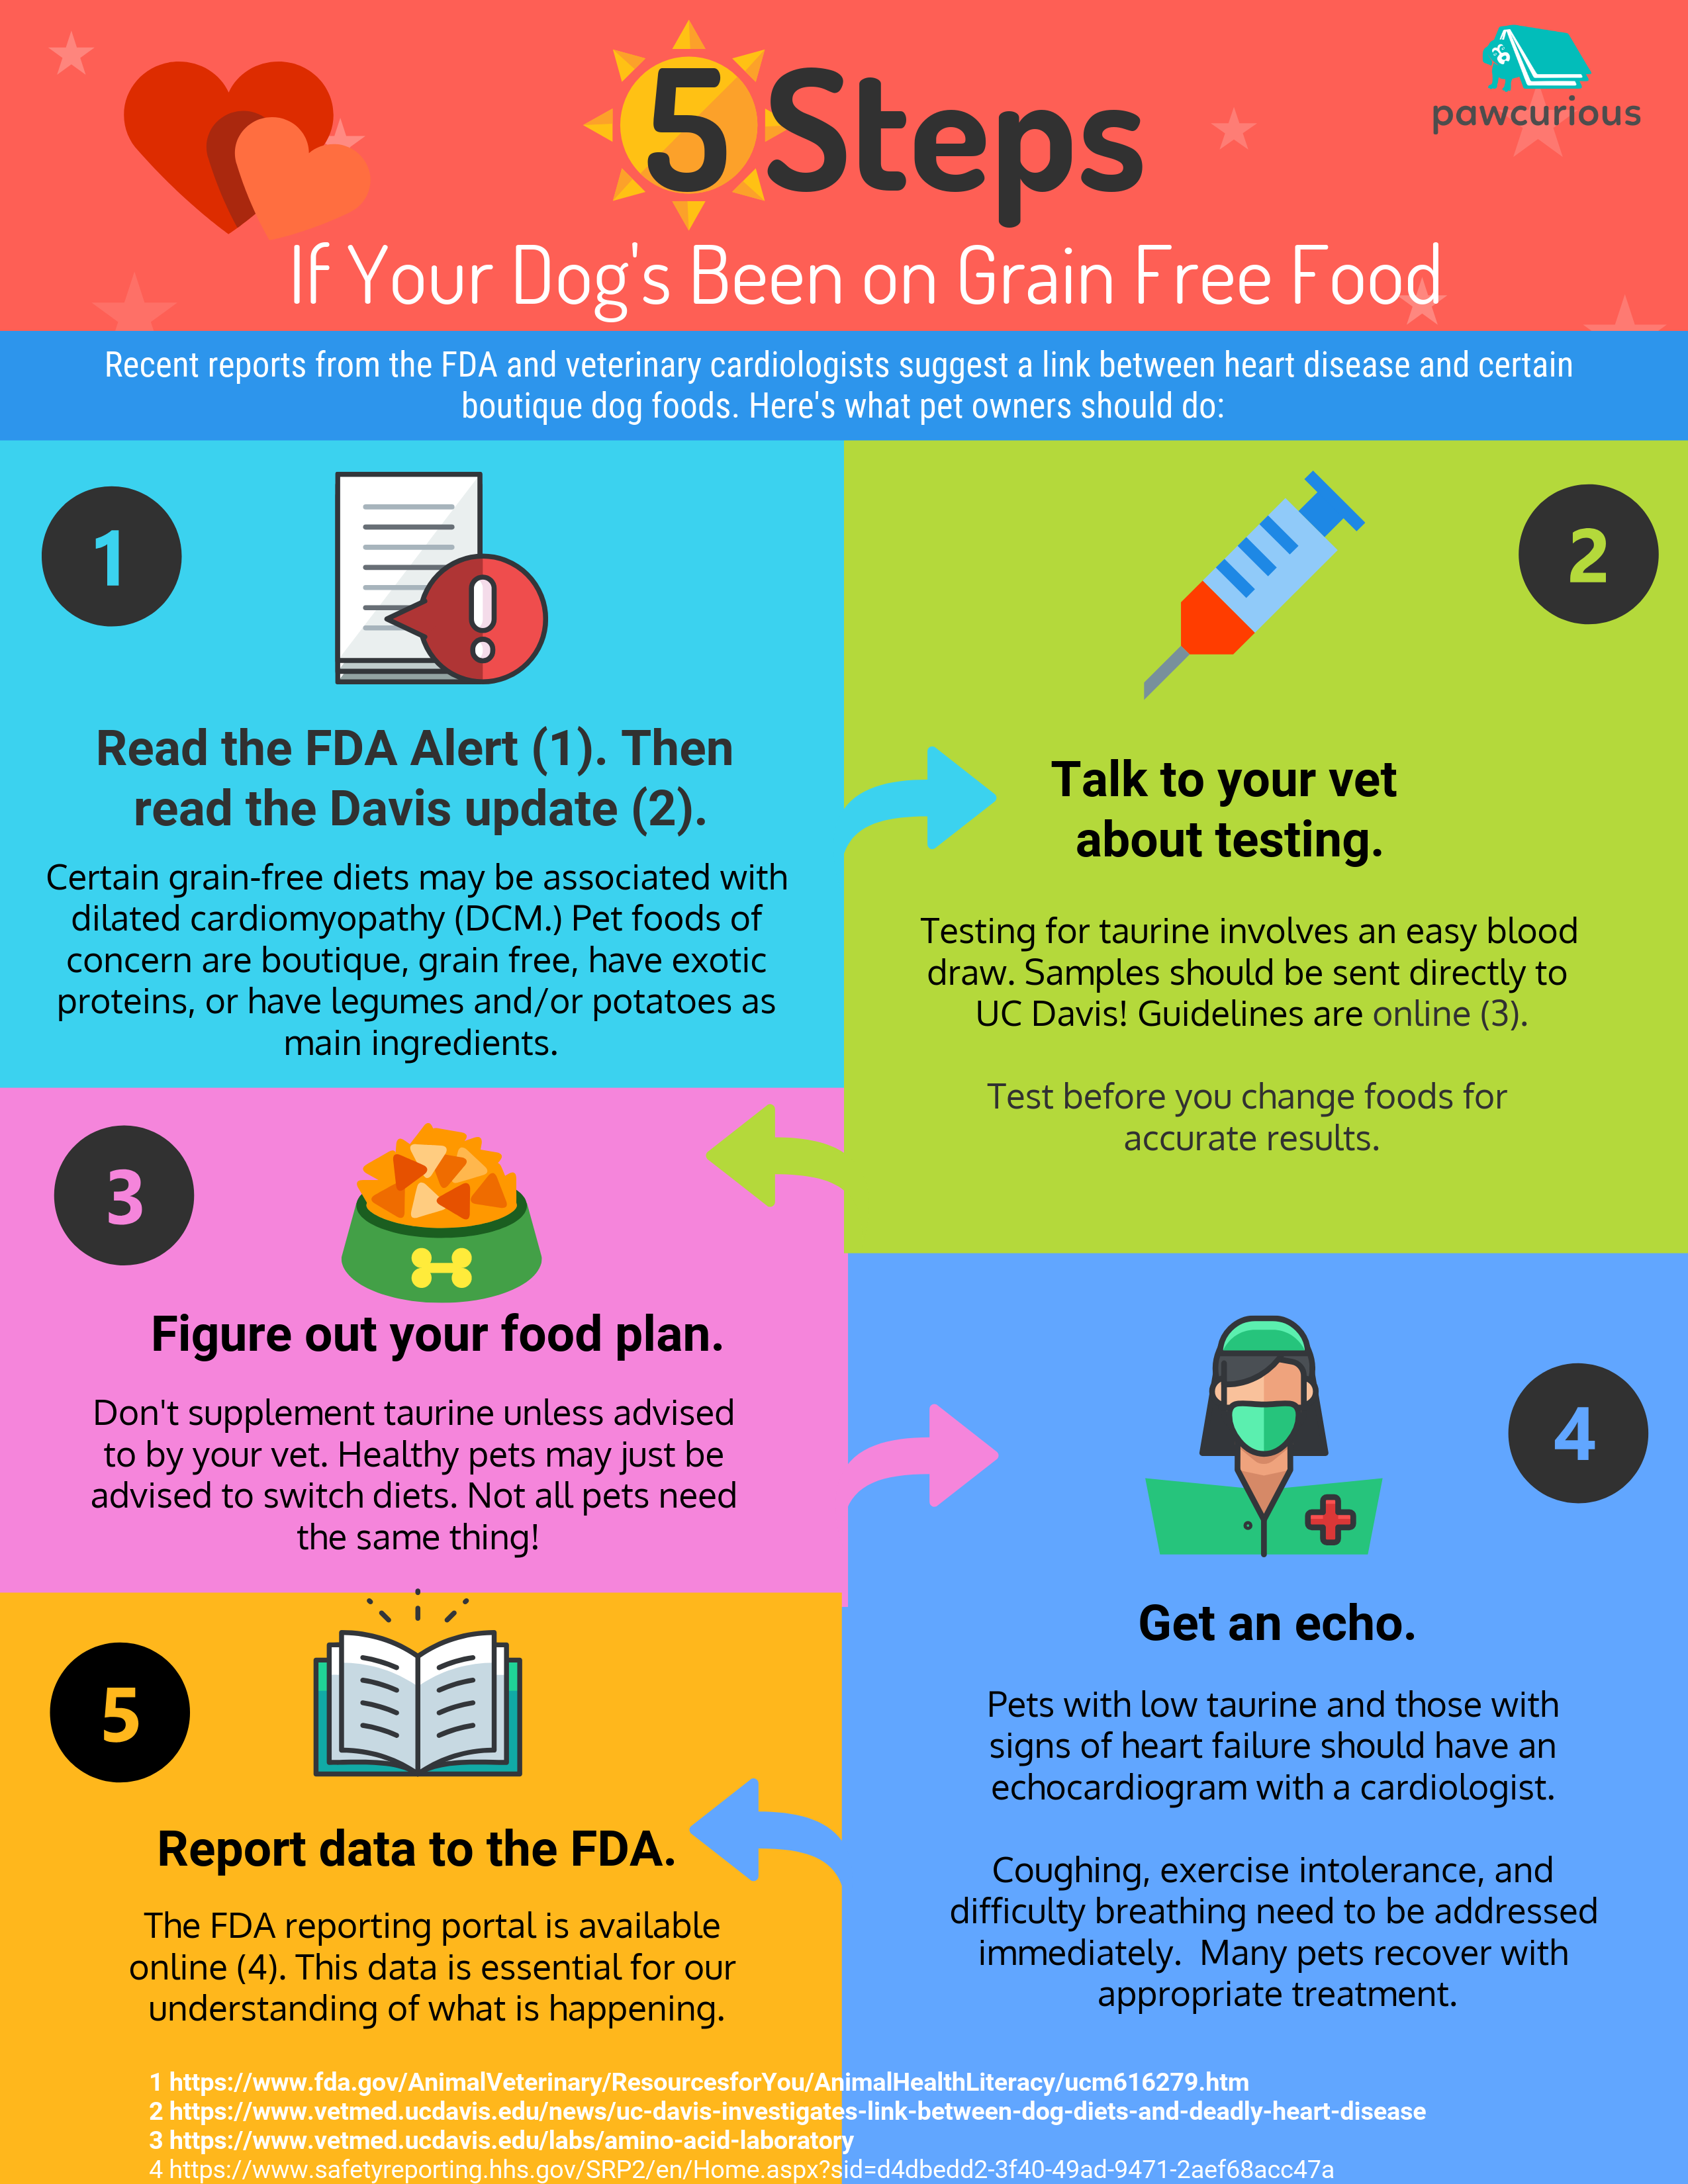 canine dcm grain free diets